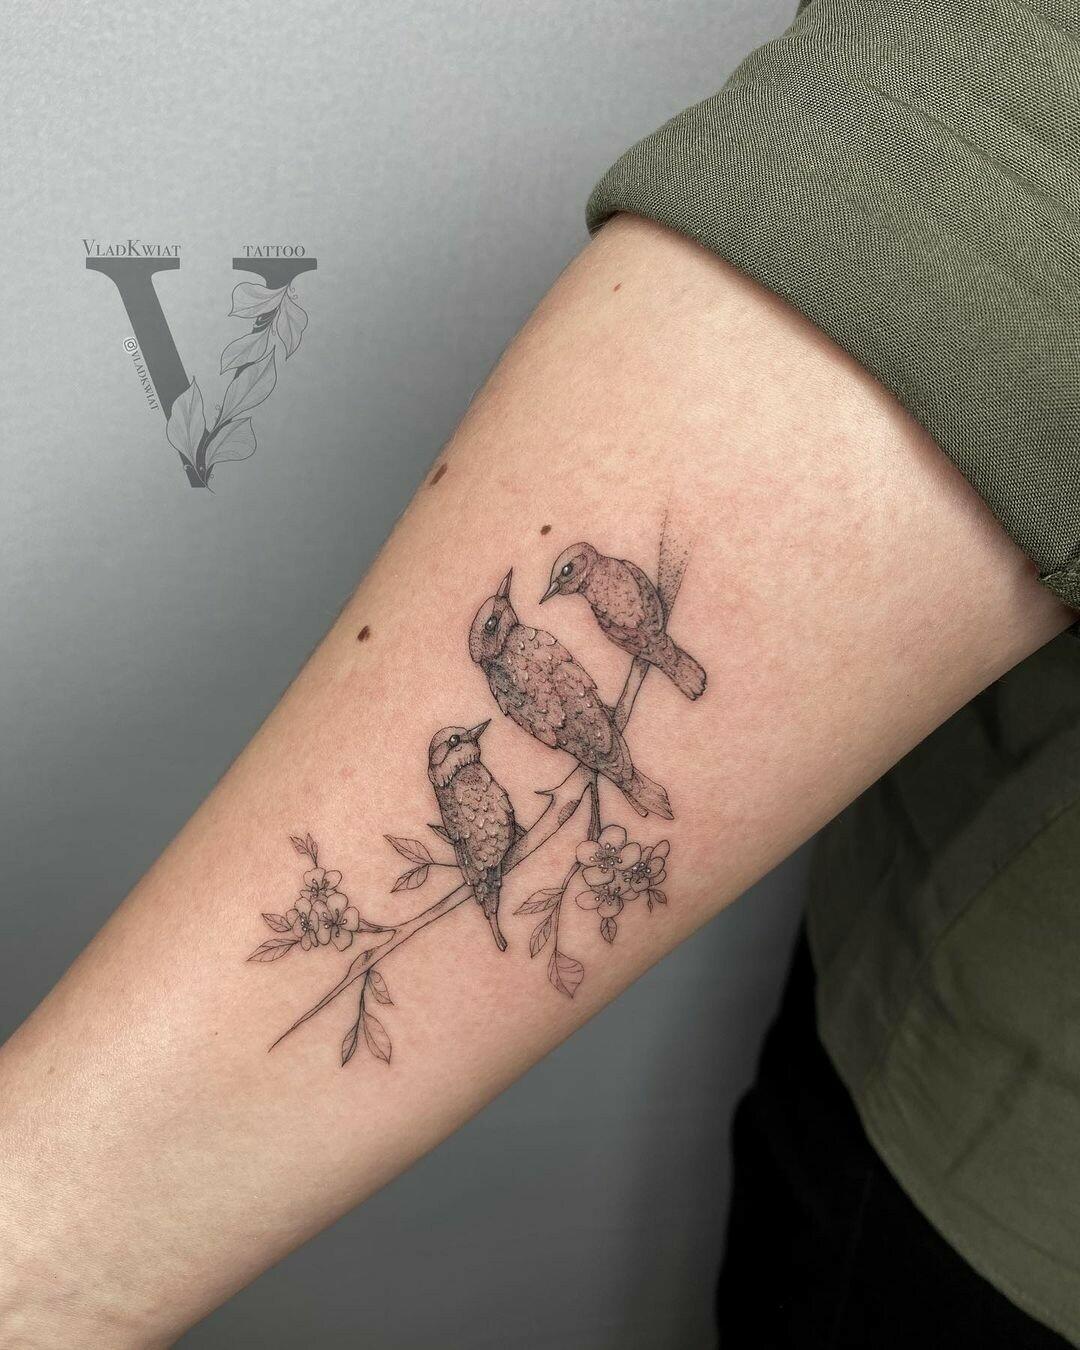 Inksearch tattoo VladKwiat